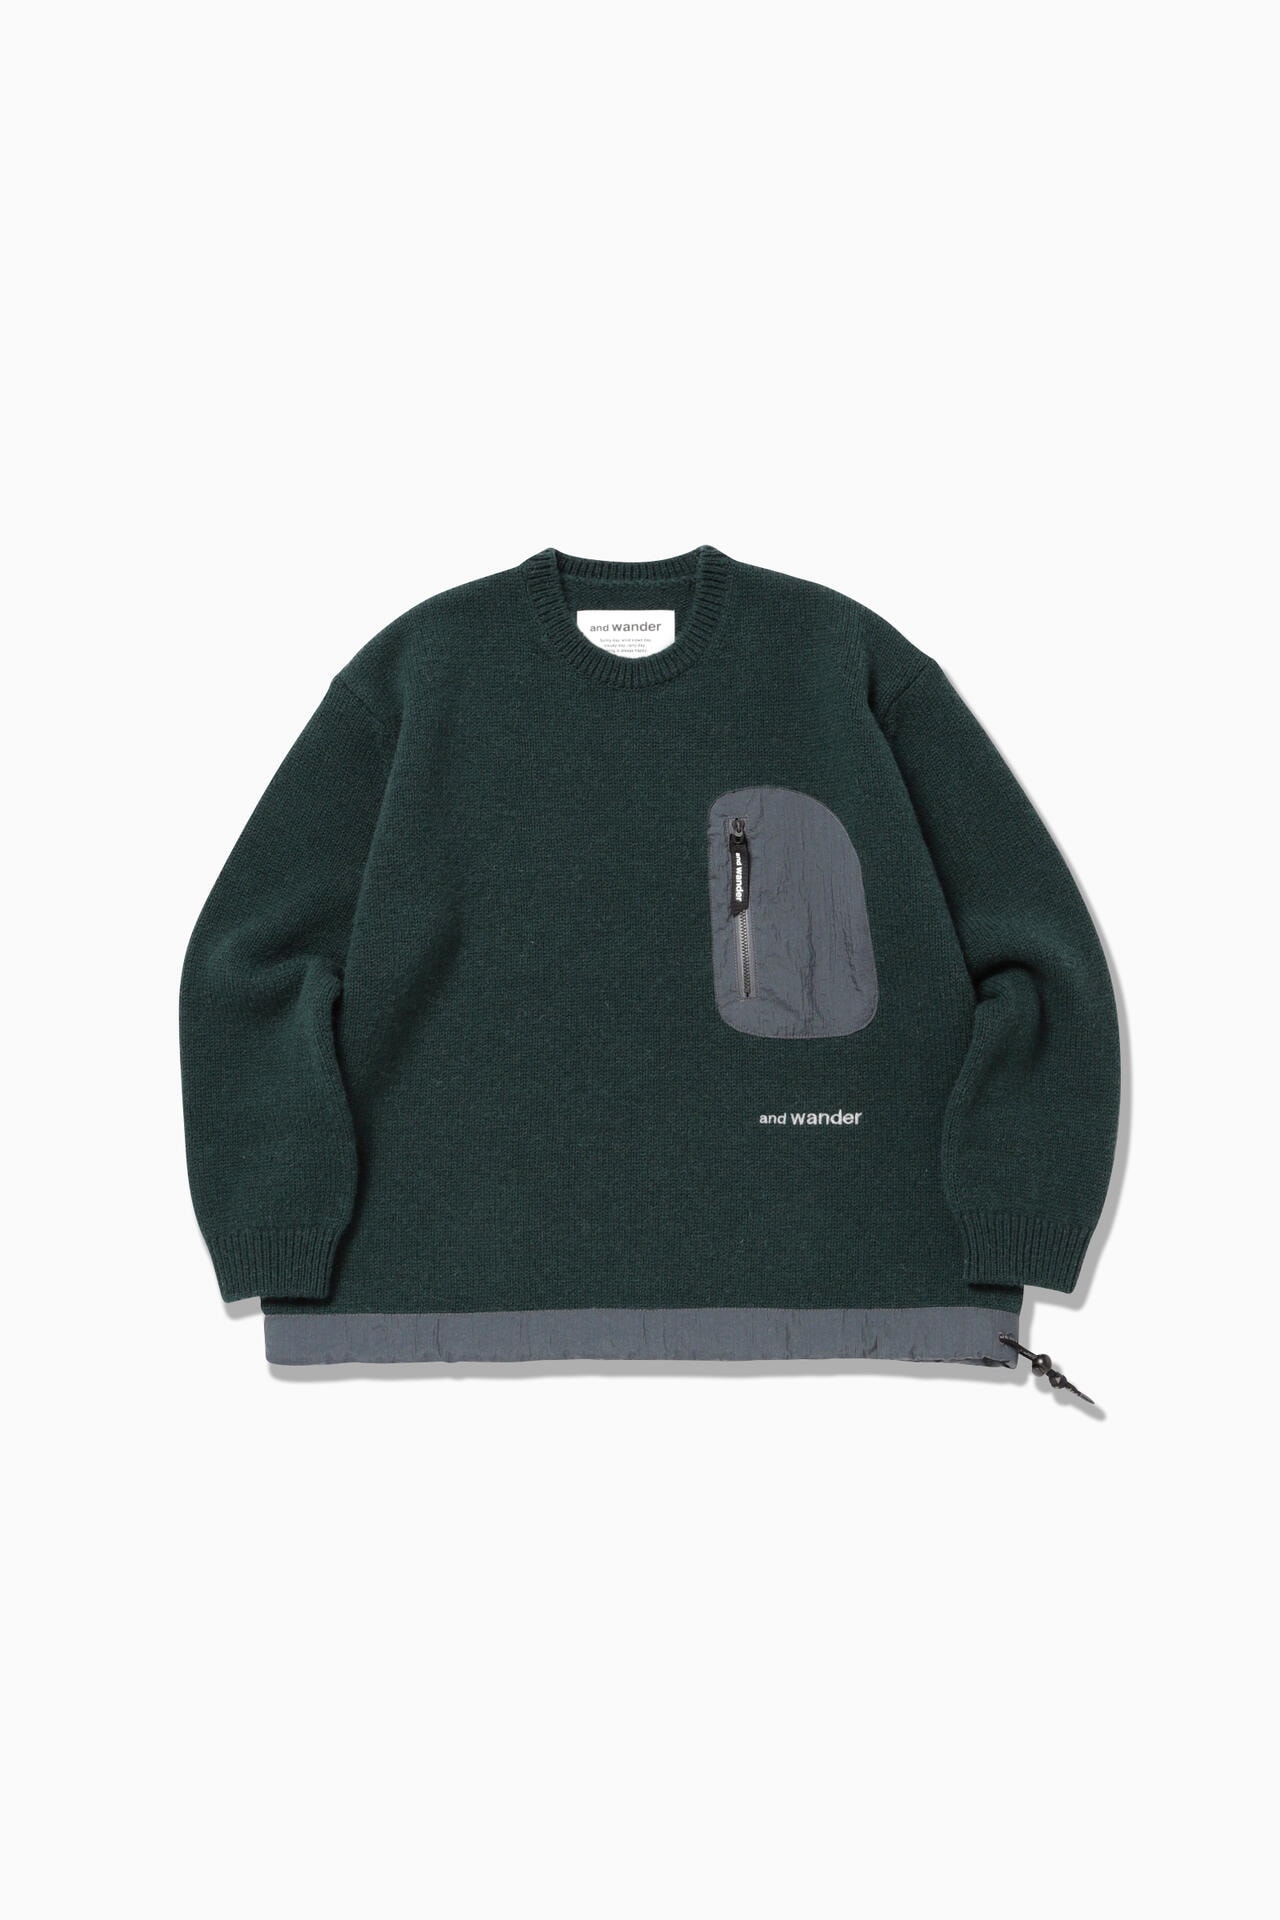 Shetland wool sweater